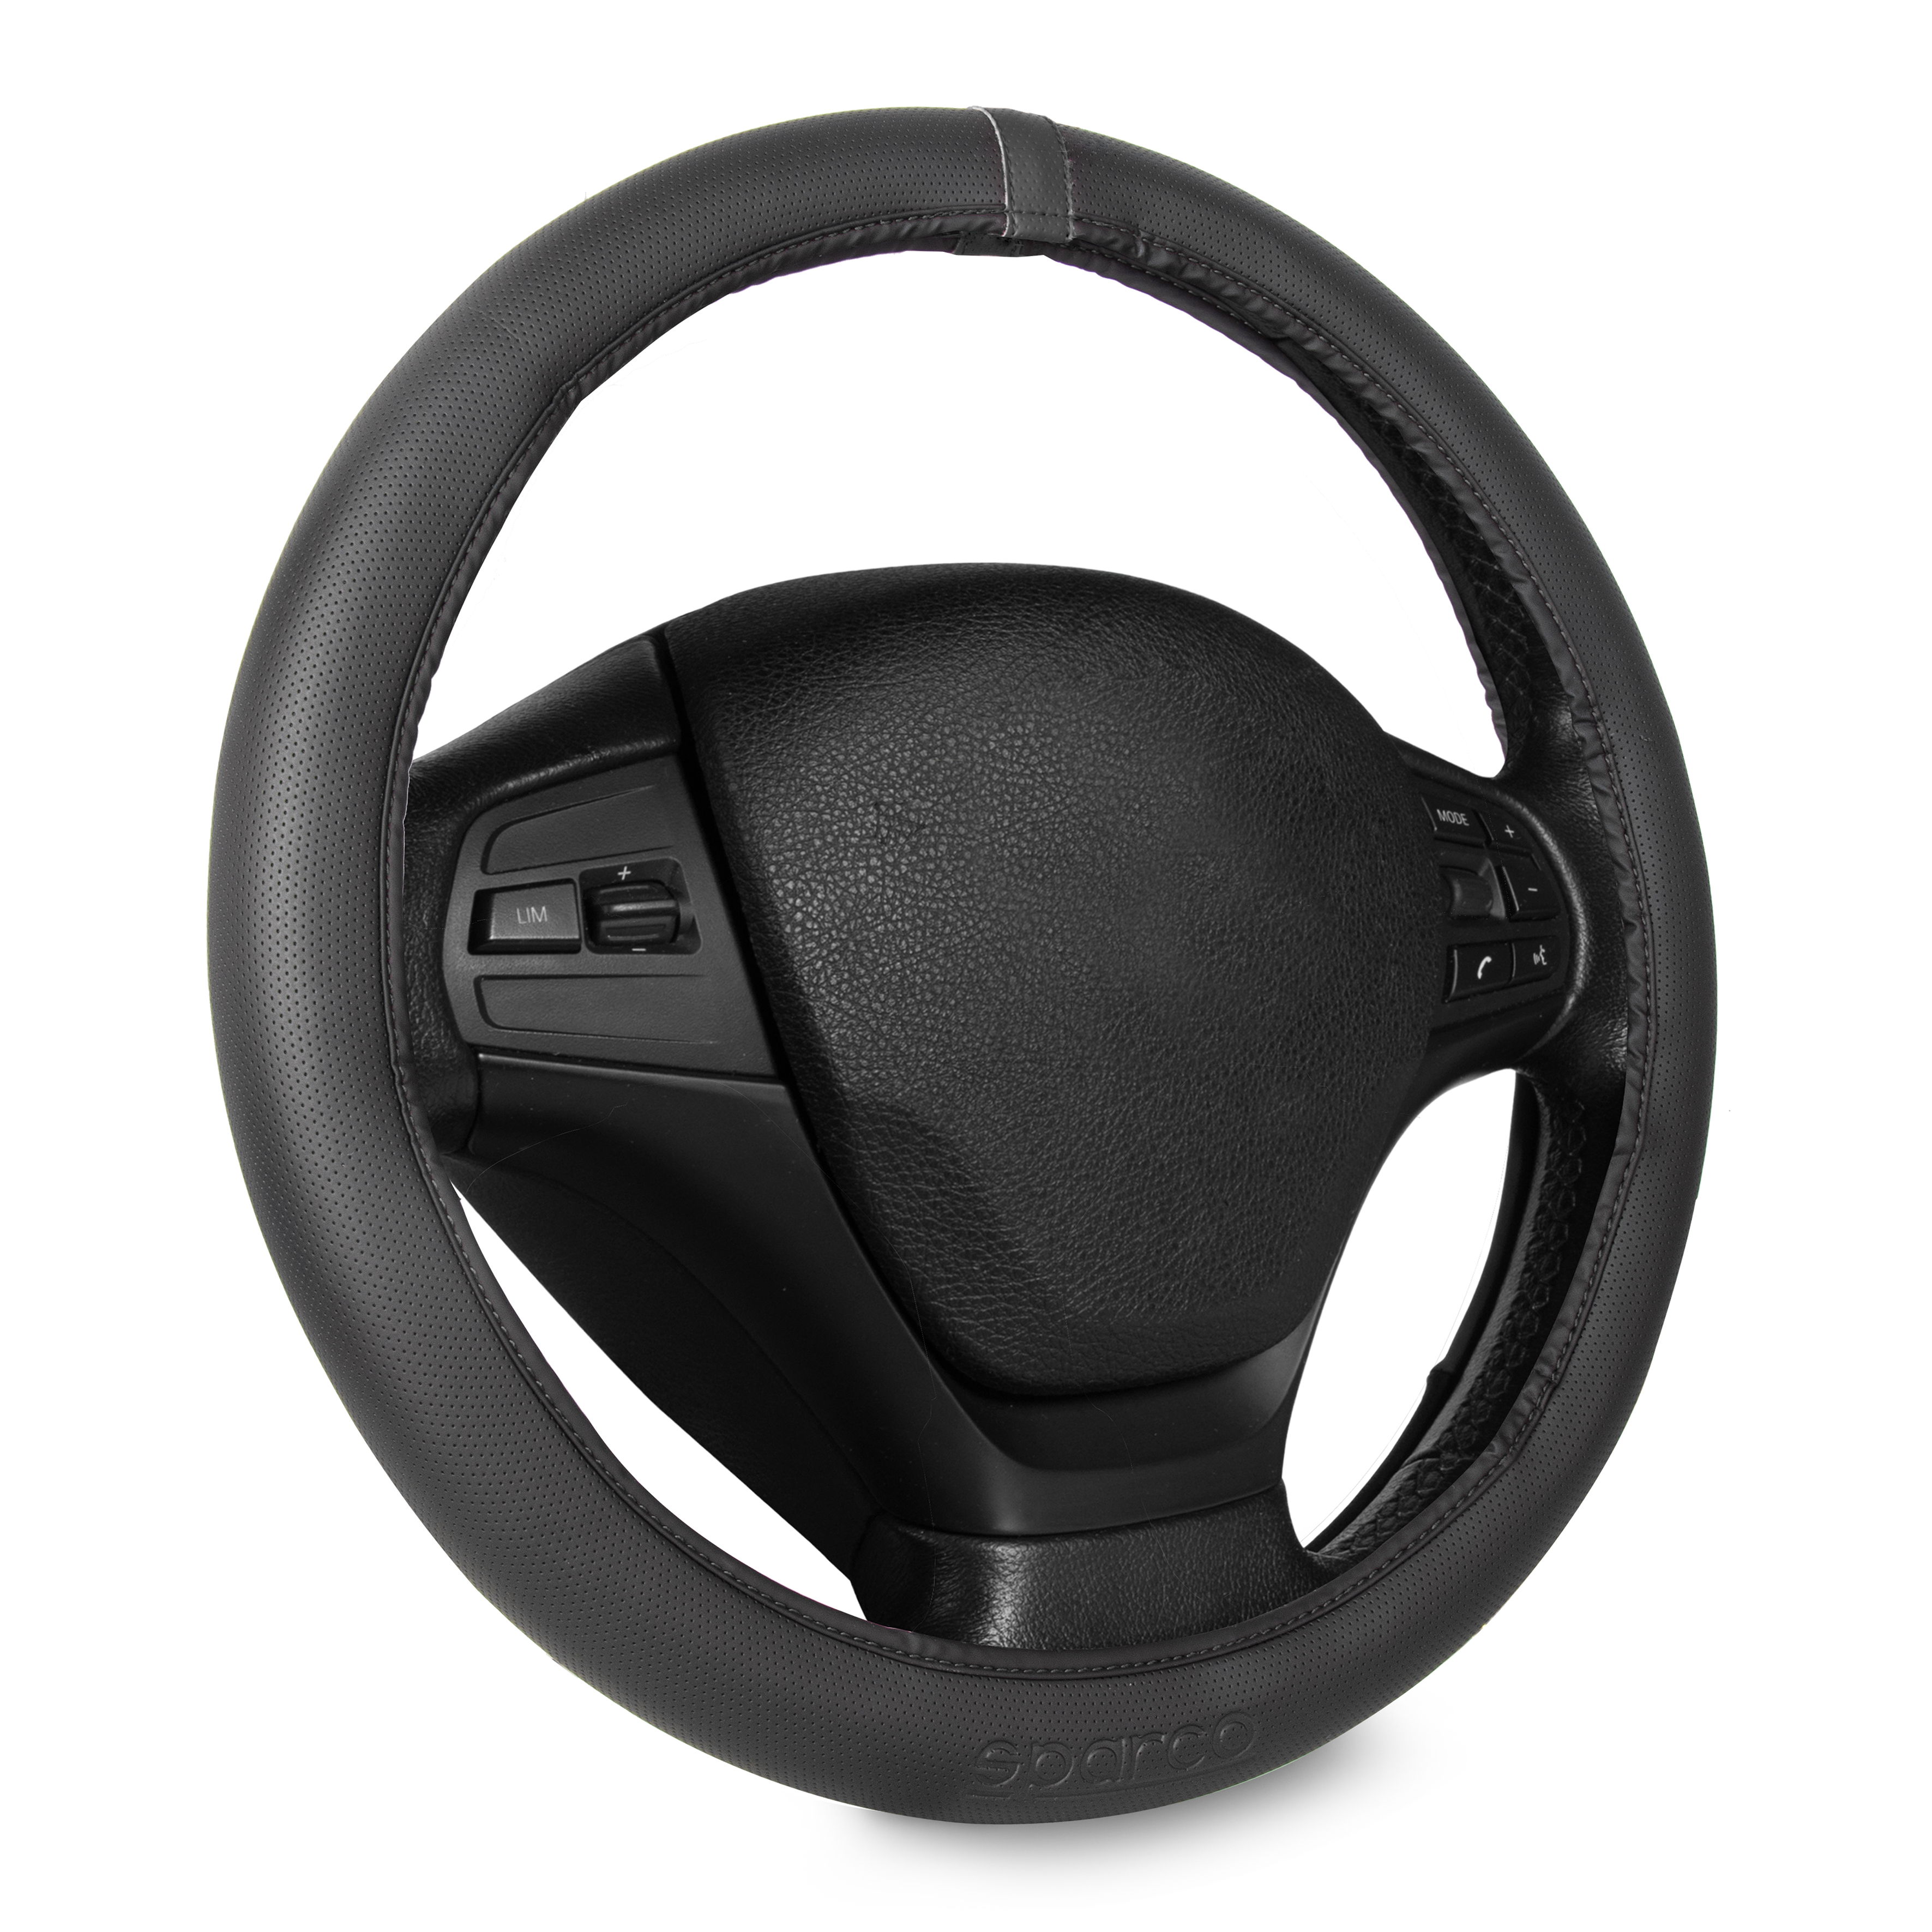 Steering wheel cover Club Sport Black - for Scania G/P/R/S series 7 -  Joostshop